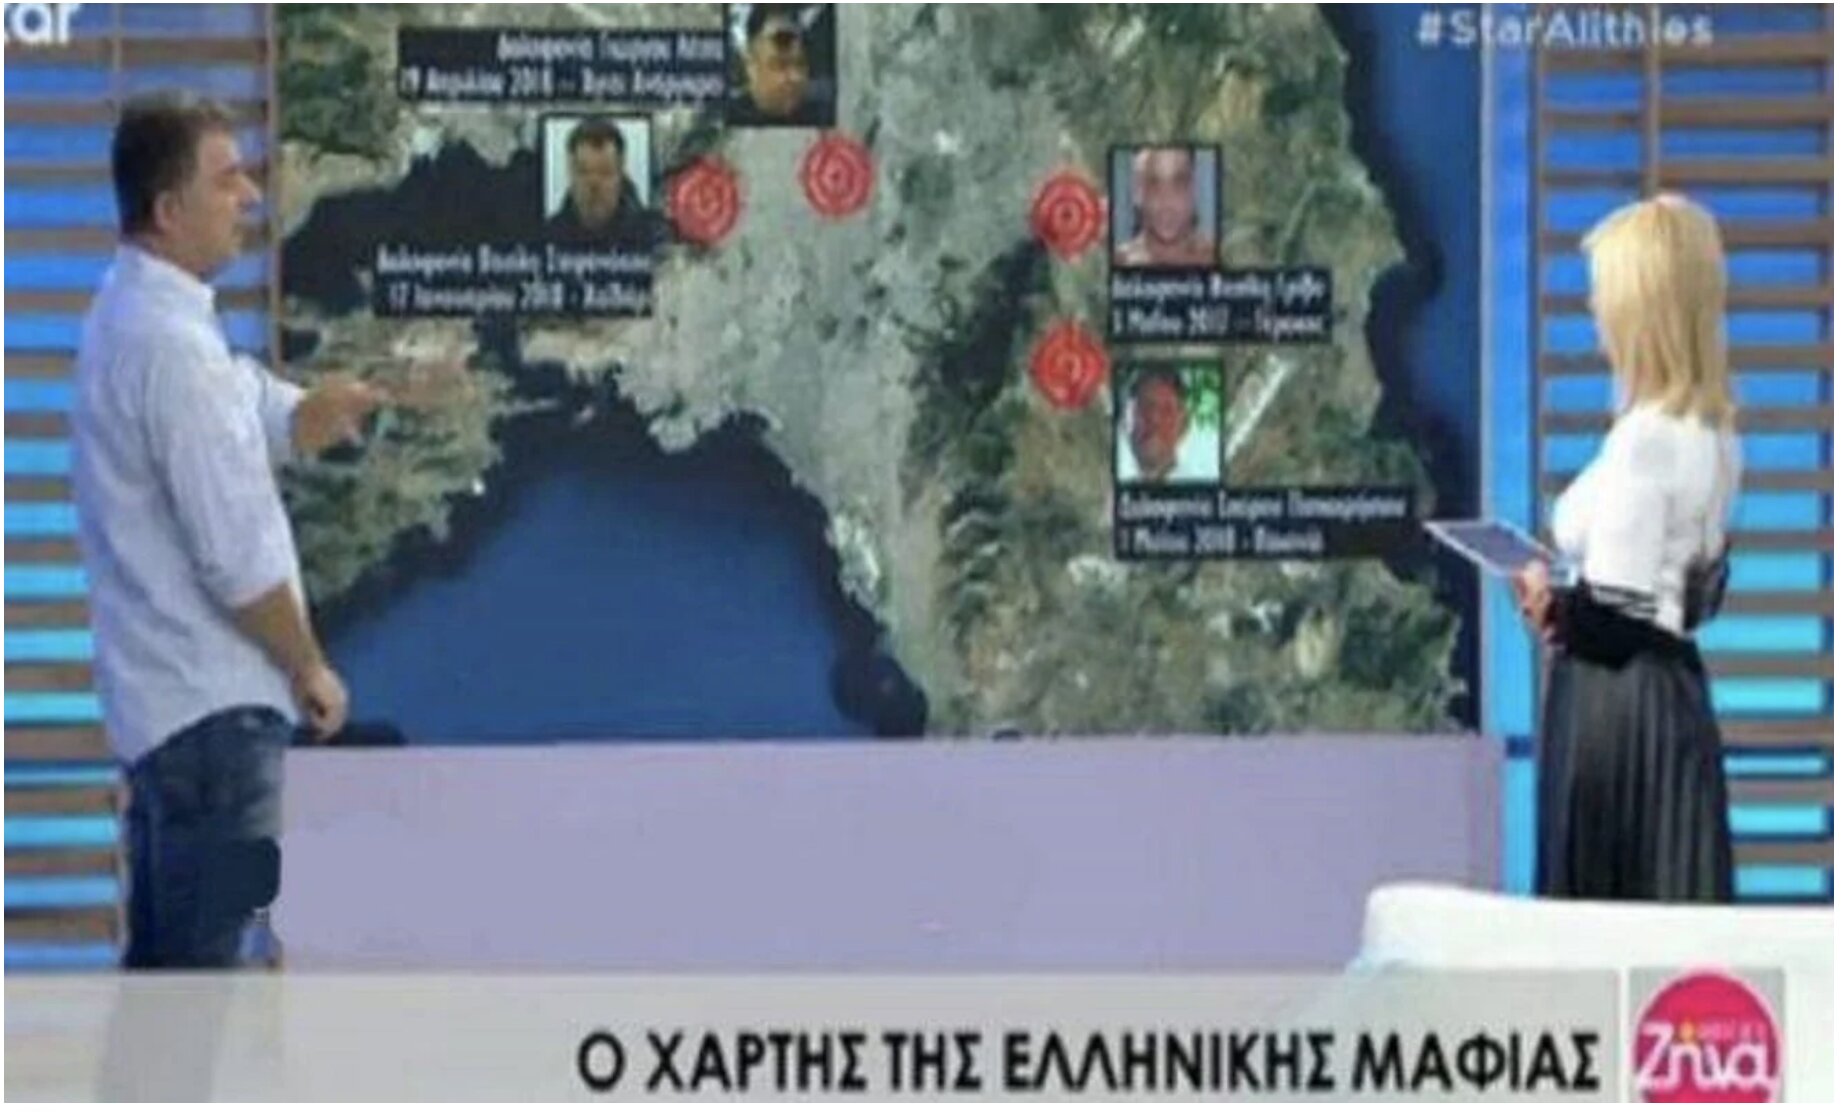 Αποκάλυψη Γιώργος Καραϊβάζ: Όταν ο δημοσιογράφος ανέλυε το χάρτη της ελληνικής μαφίας (Βίντεο)